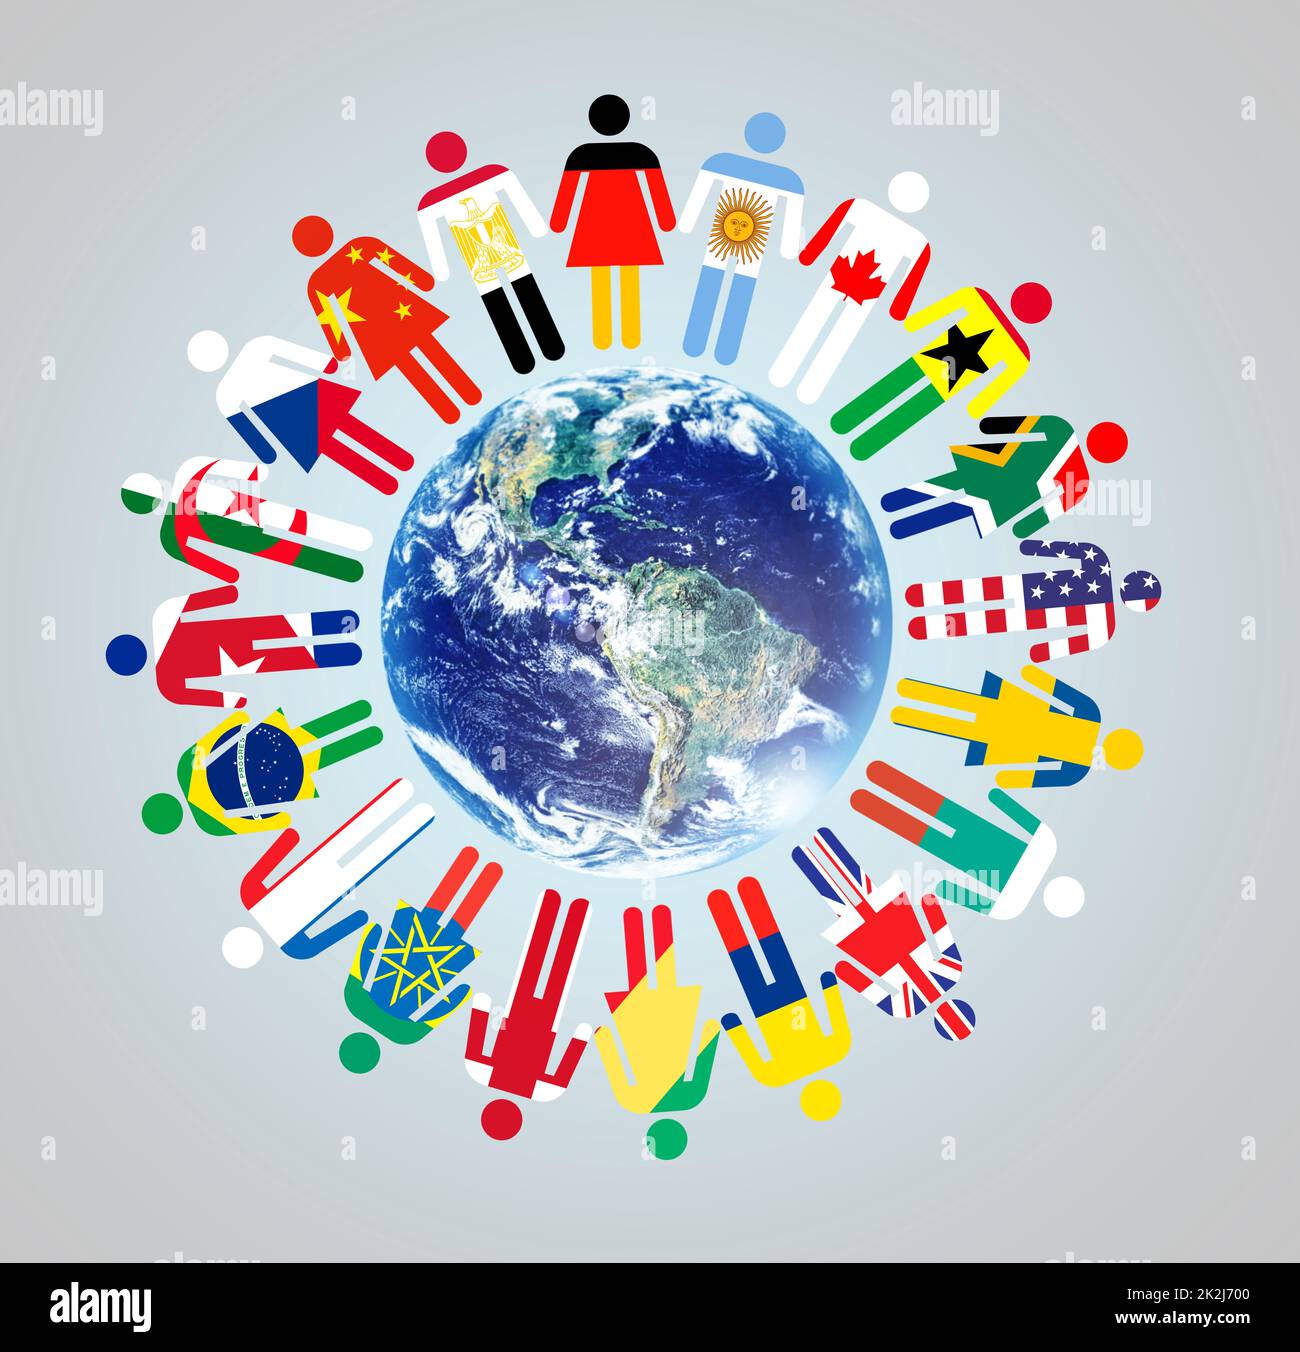 Insieme facciamo la differenza. Un globo con rappresentanze di culture e nazionalità del mondo che lo circondano. Foto Stock